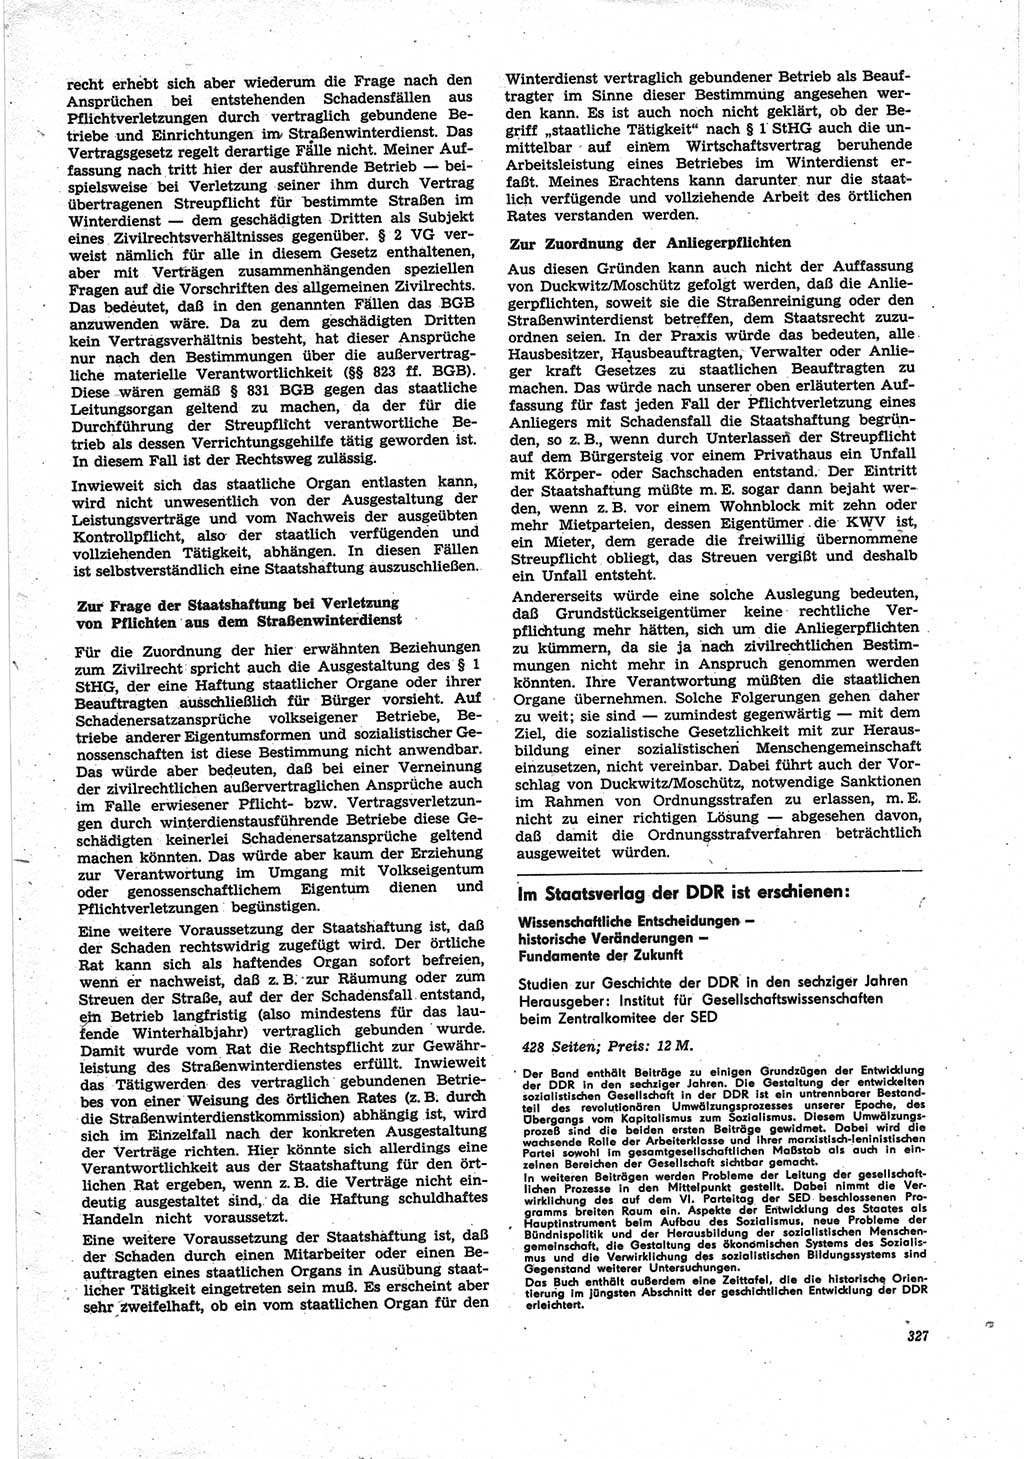 Neue Justiz (NJ), Zeitschrift für Recht und Rechtswissenschaft [Deutsche Demokratische Republik (DDR)], 25. Jahrgang 1971, Seite 327 (NJ DDR 1971, S. 327)